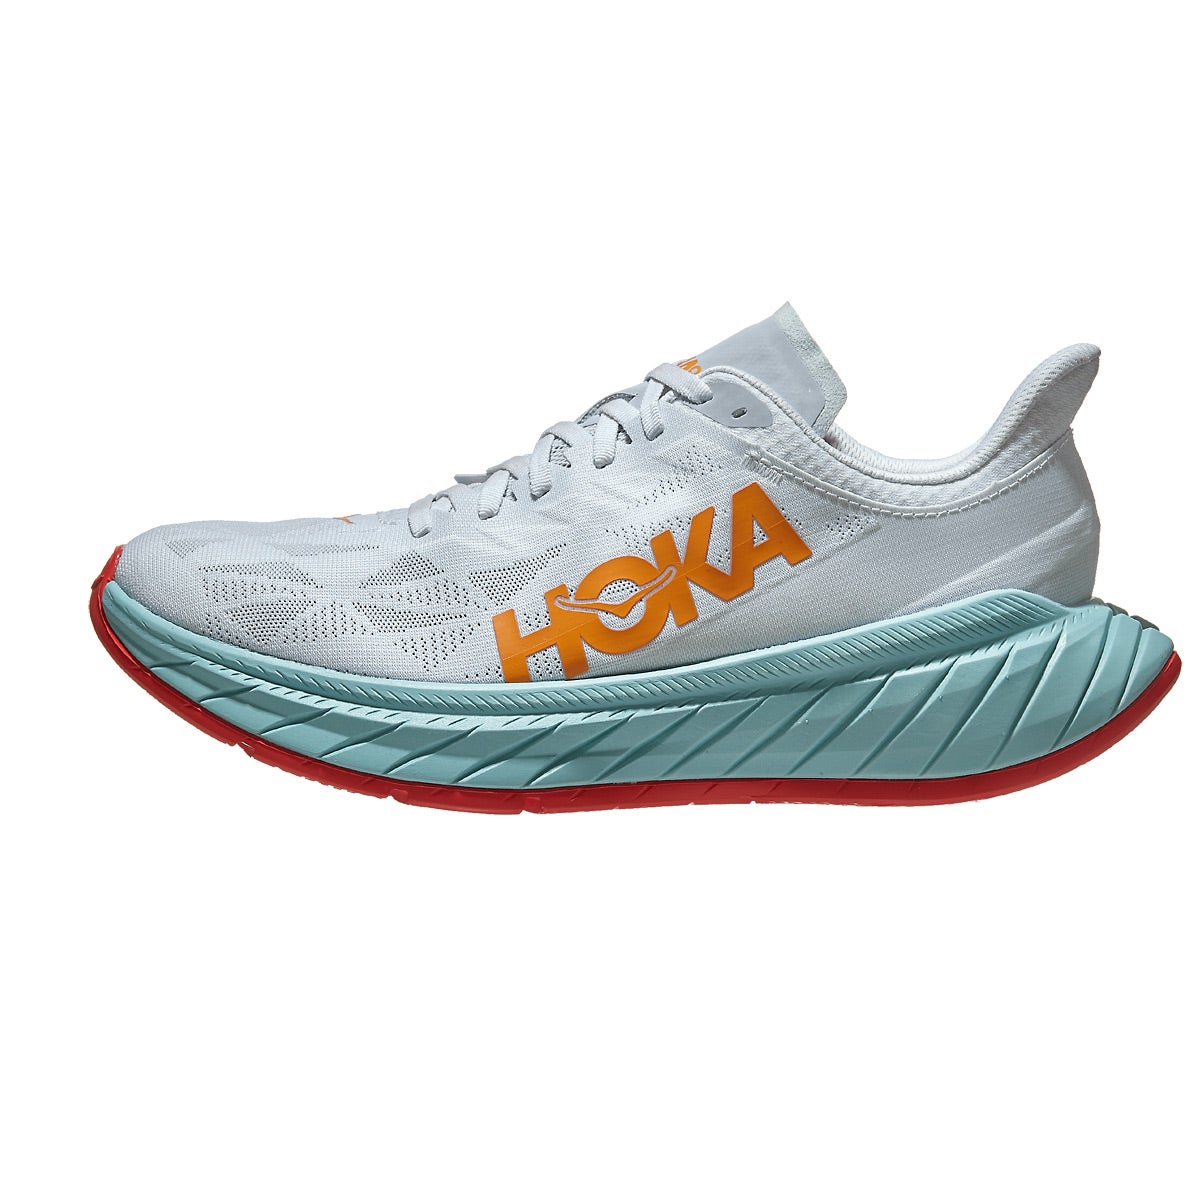 HOKA Carbon X 2 Men's Shoes White/Orange 360° View - Tennis Warehouse